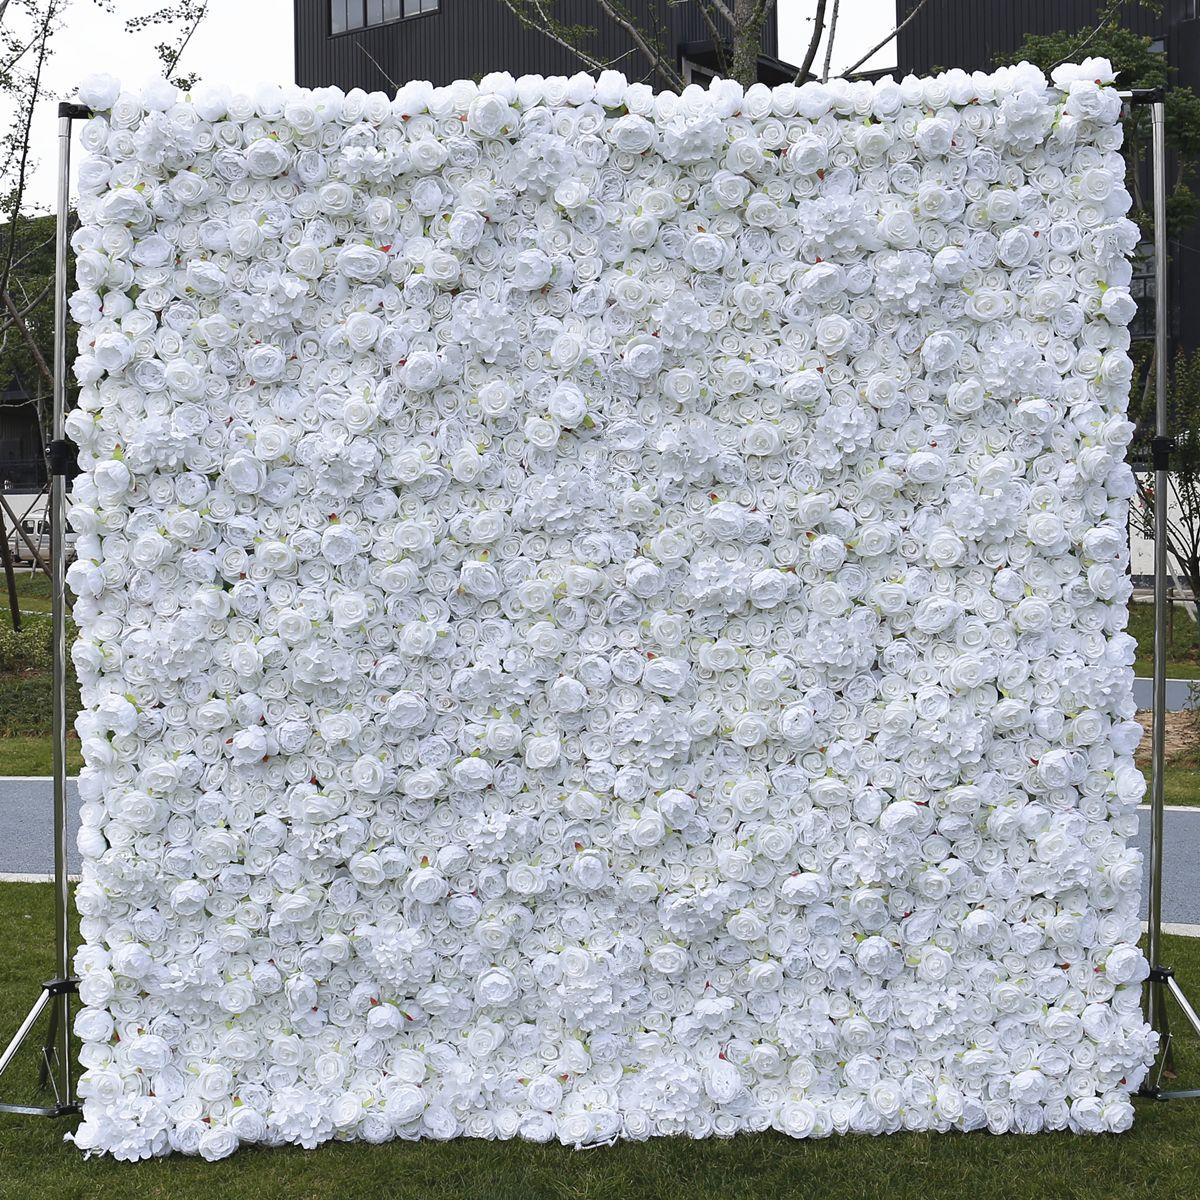 फैक्टरी प्रत्यक्ष बिक्री शुद्ध सफेद कपड़ा नीचे नकली फूल दीवार पृष्ठभूमि शादी की सजावट